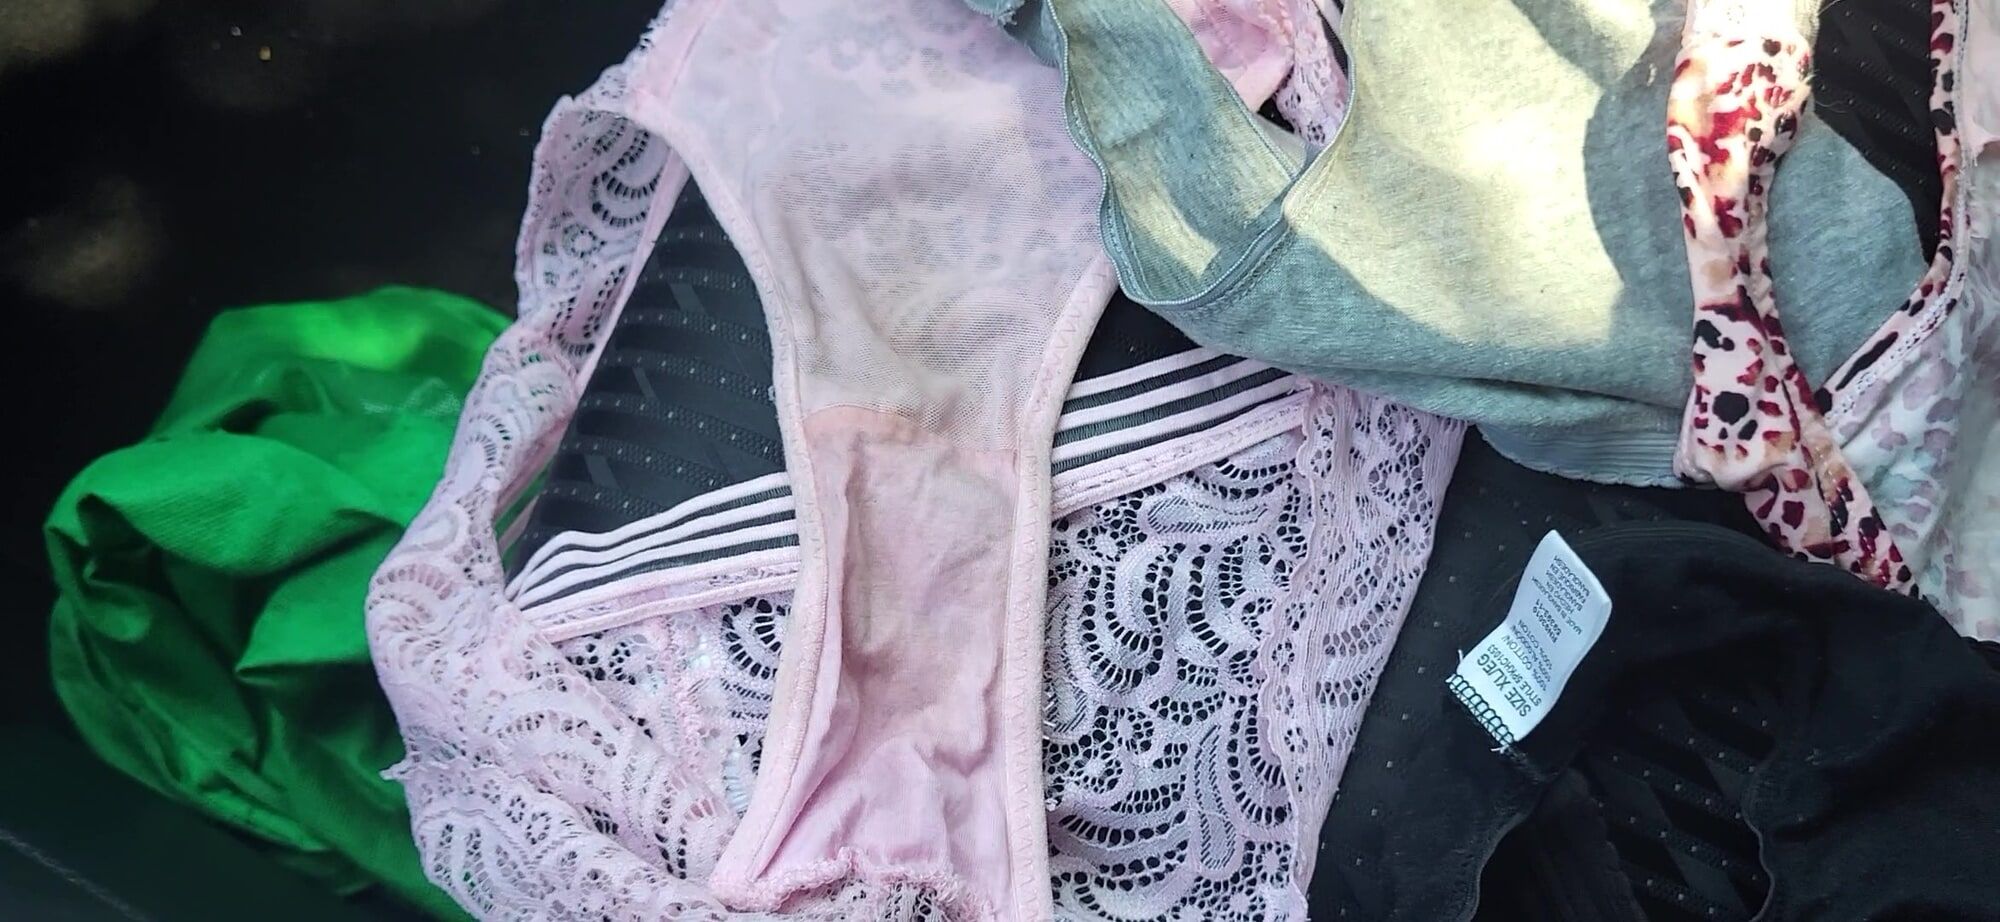 Panties On The Beach #2